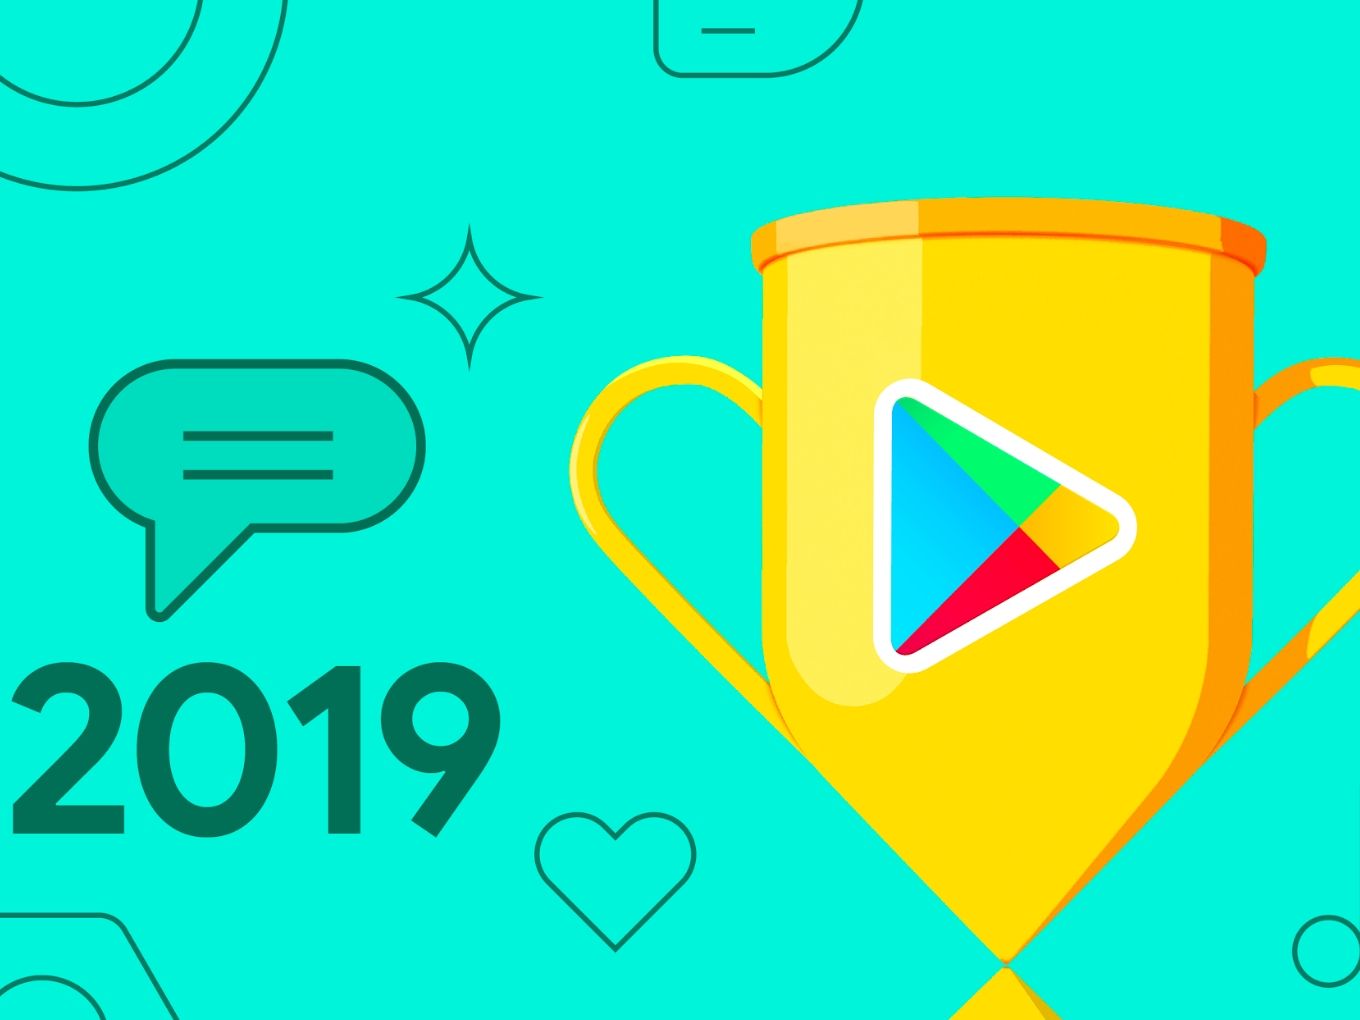 India’s Hike, Meesho, Vedantu Win In 2019 Google Play Awards